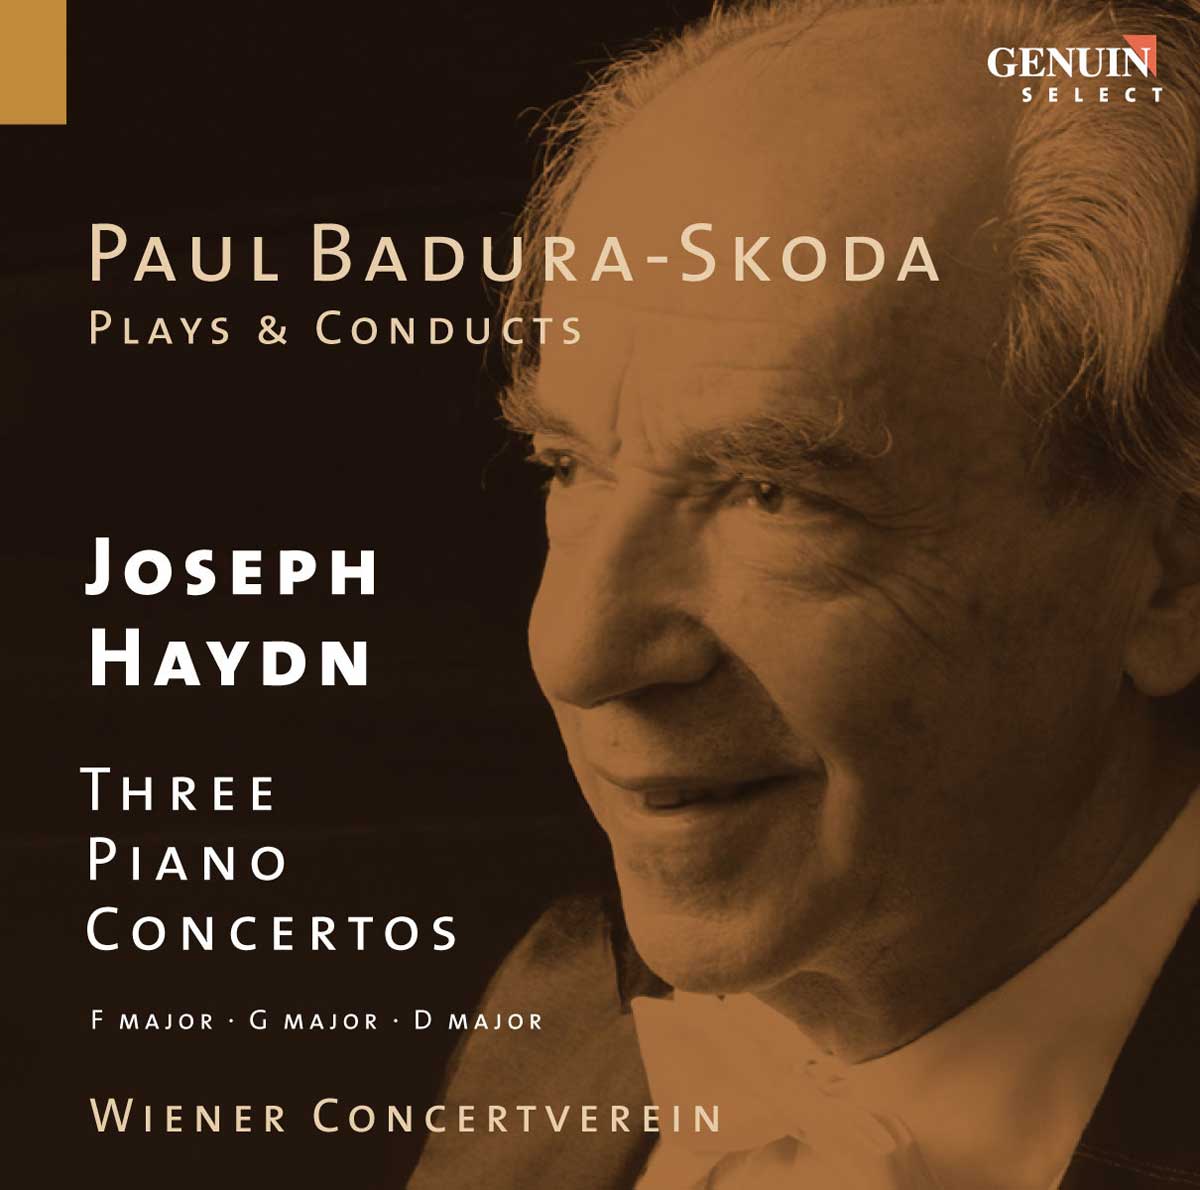 CD album cover 'Joseph Haydn' (GEN 89145 ) with Paul Badura-Skoda, Wiener Concertverein